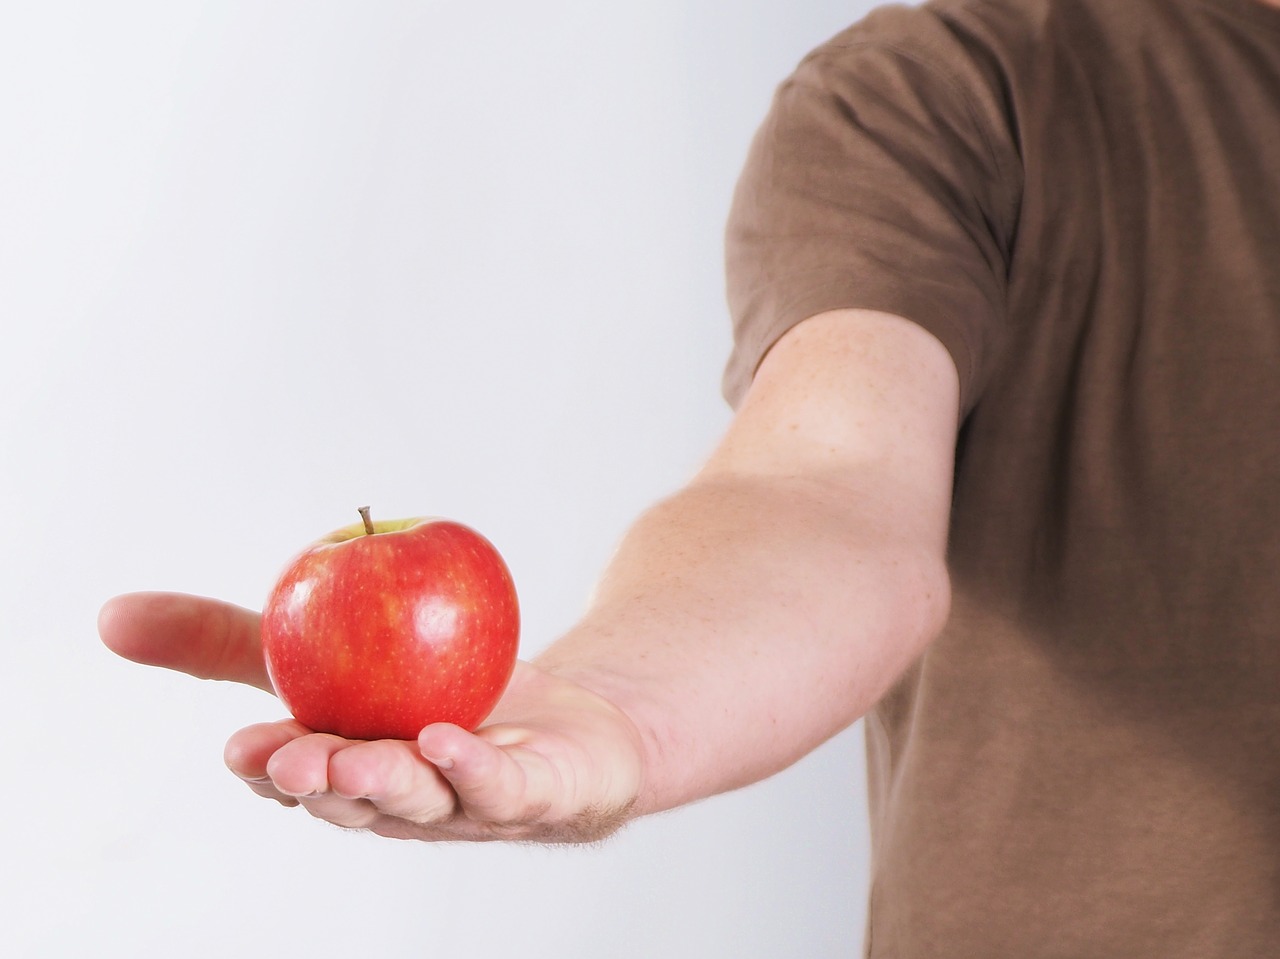 Кинуть яблоко. Красное яблоко в руке. Рука подкидывает яблоко. Яблоко в руке фото. Картинка яблоки и кожа.